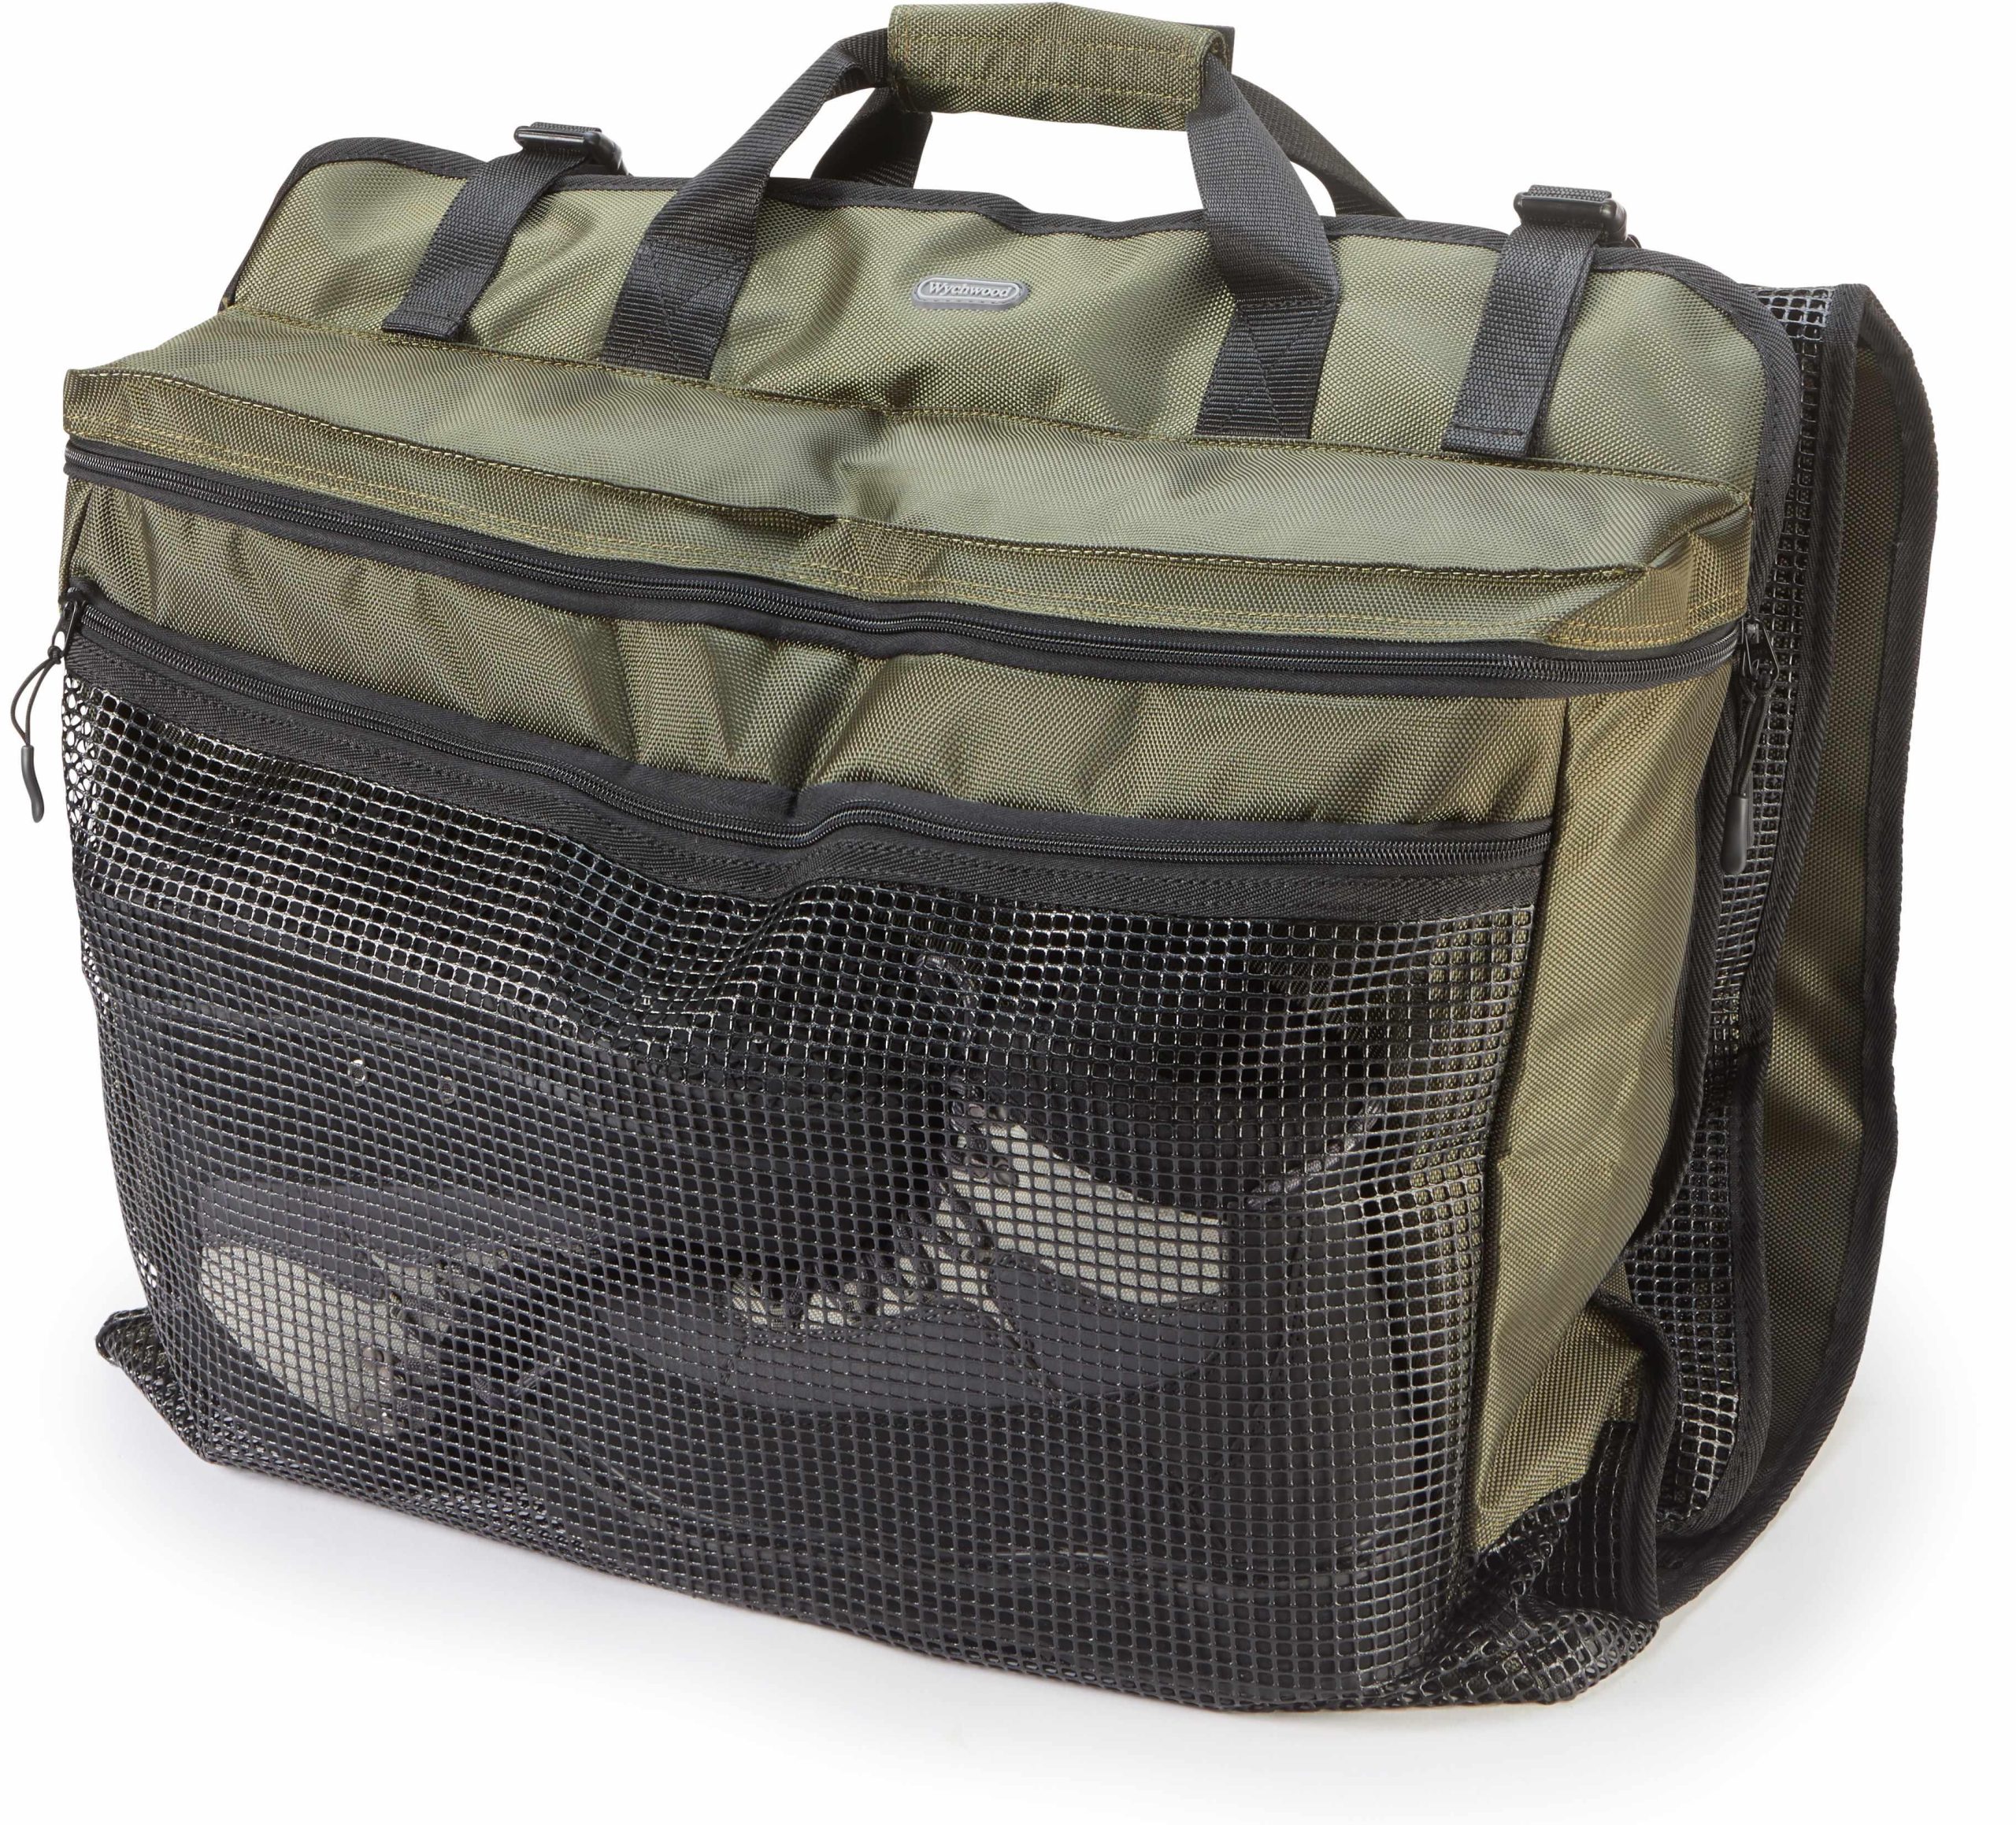 Wychwood Gear Trap Short Haul Vest - Fishing Bags Luggage